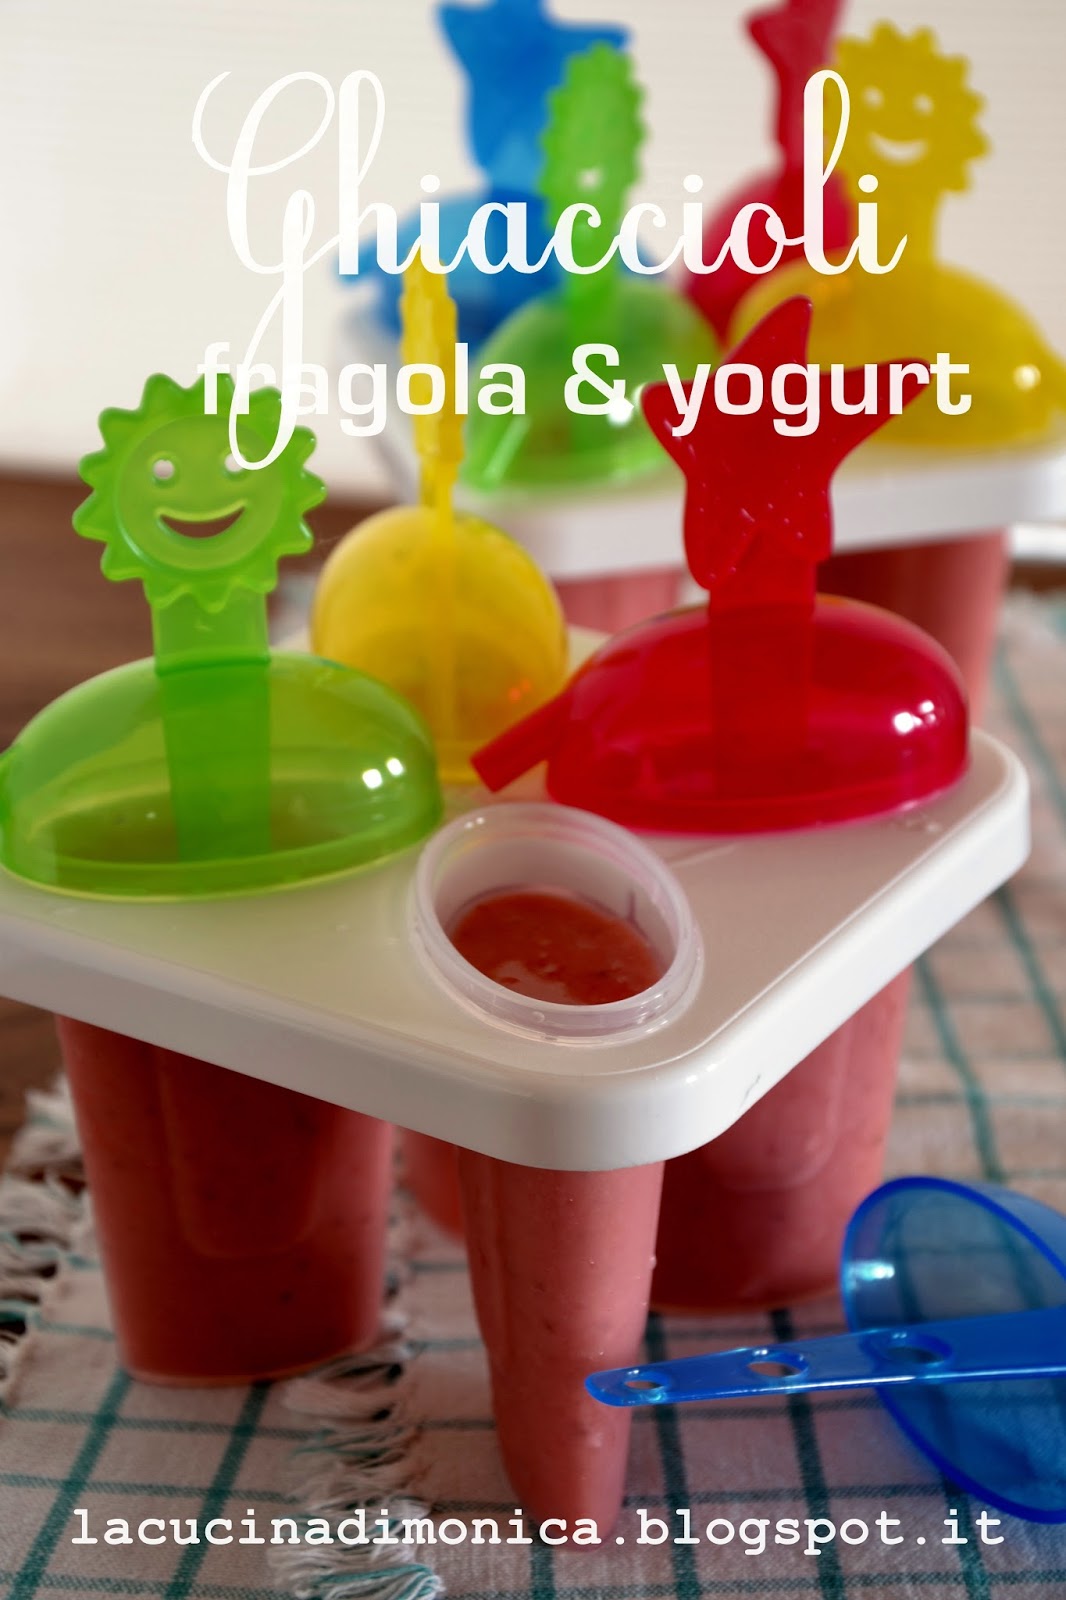 ghiaccioli fragole & yogurt